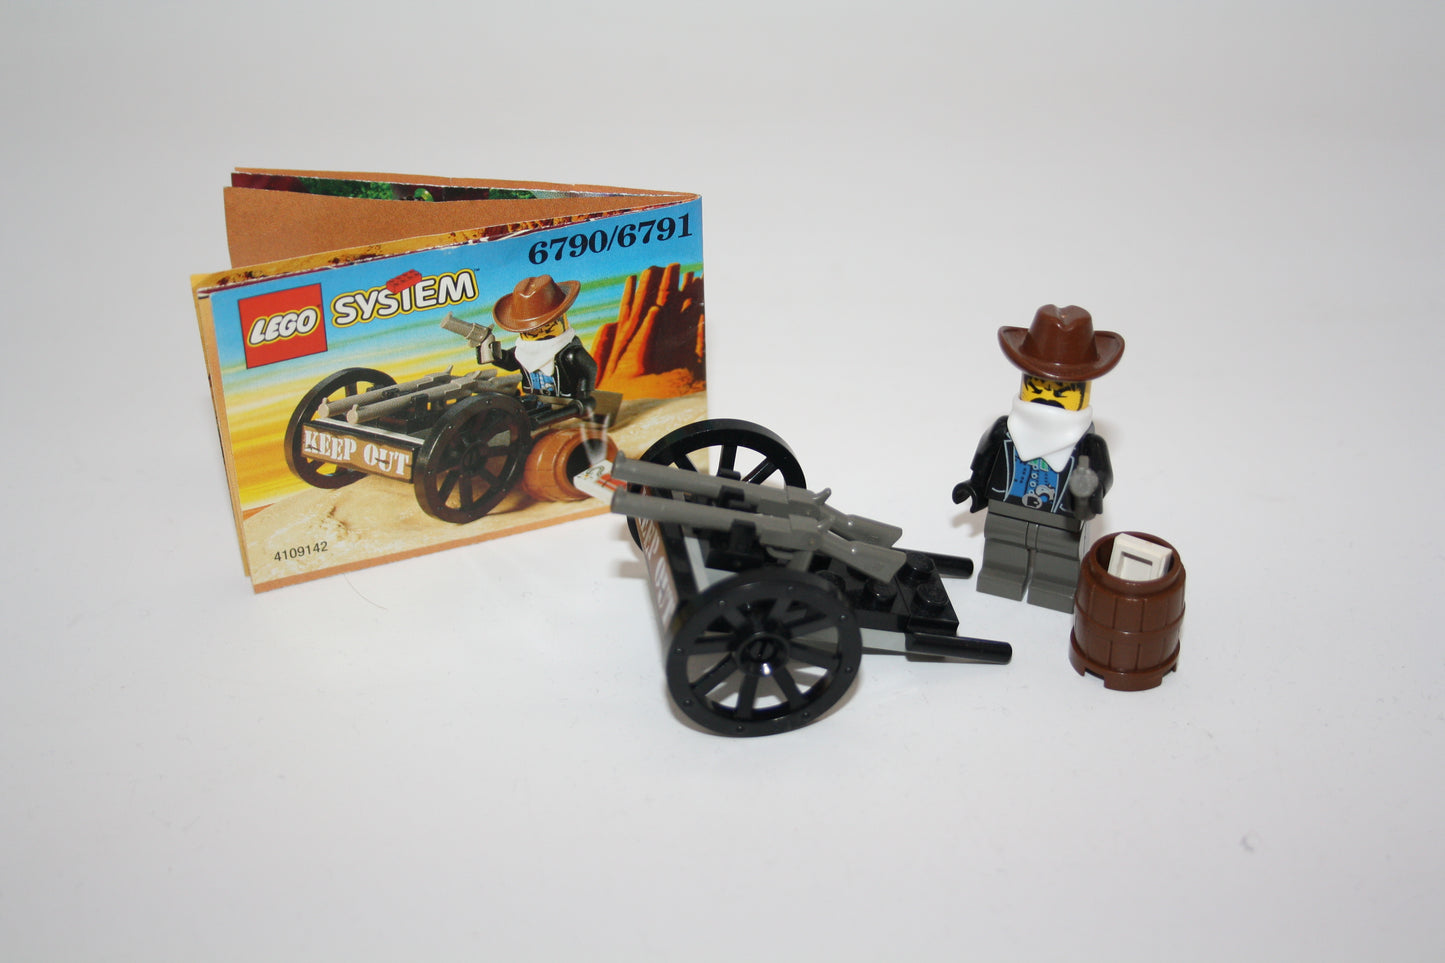 LEGO® Western - Set 6790 Bandit with Gun-Bandit mit Pistole - Wilder Westen/Wild West - inkl. BA